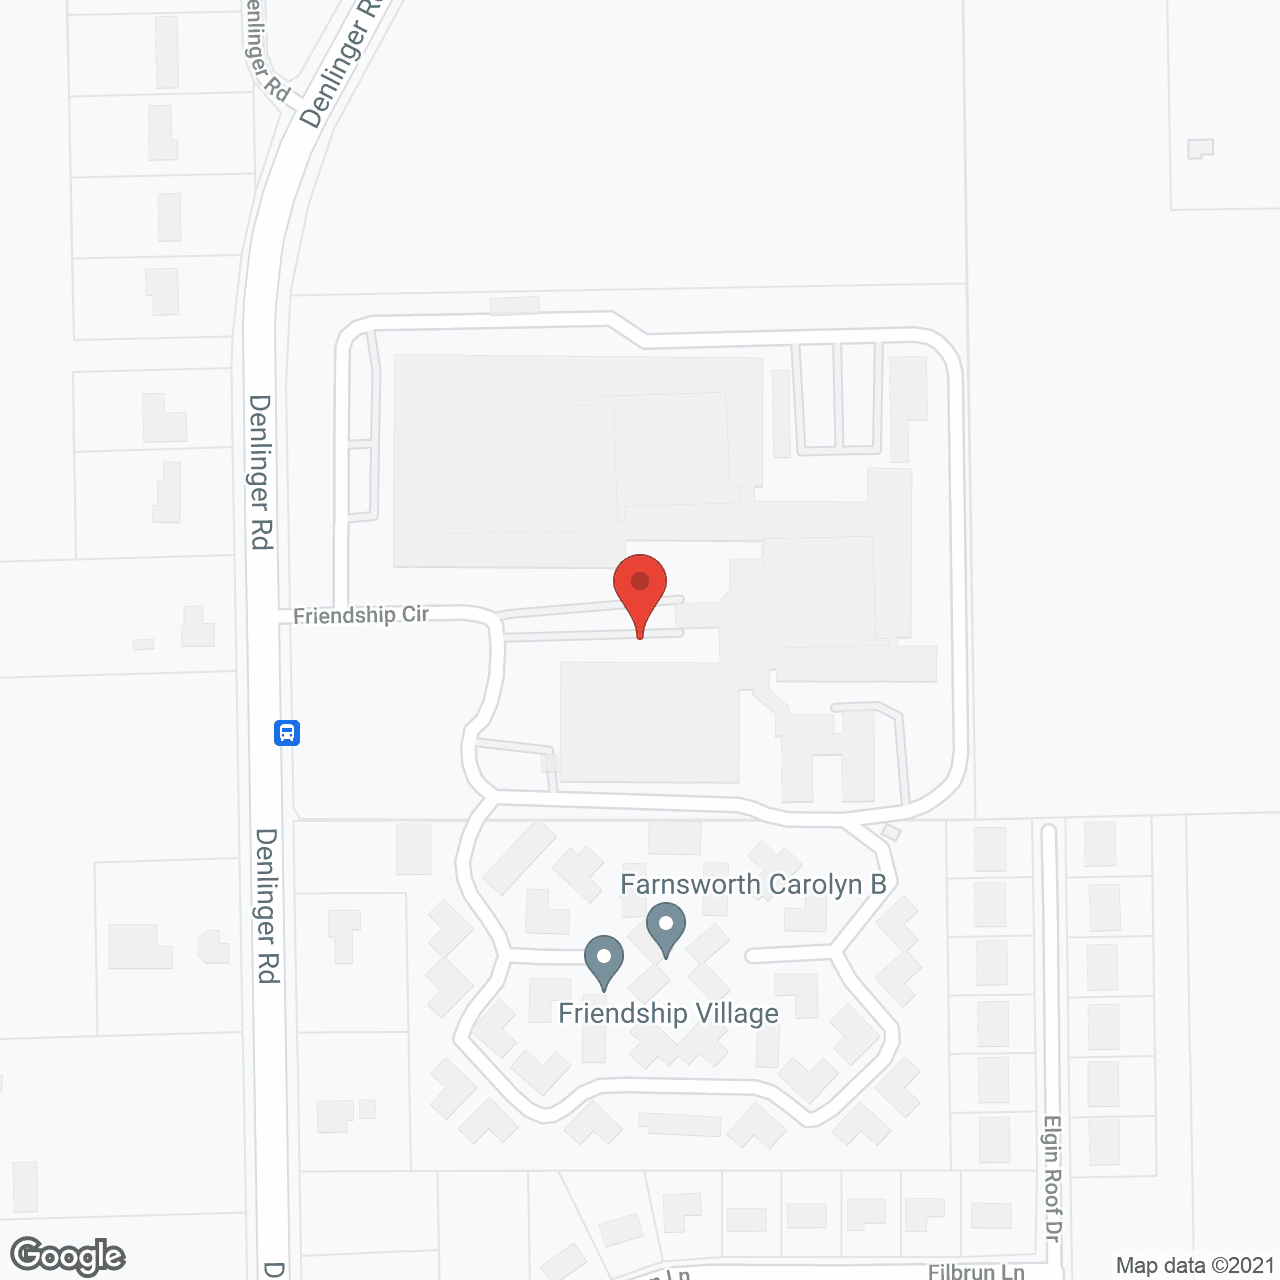 Friendship Village in google map